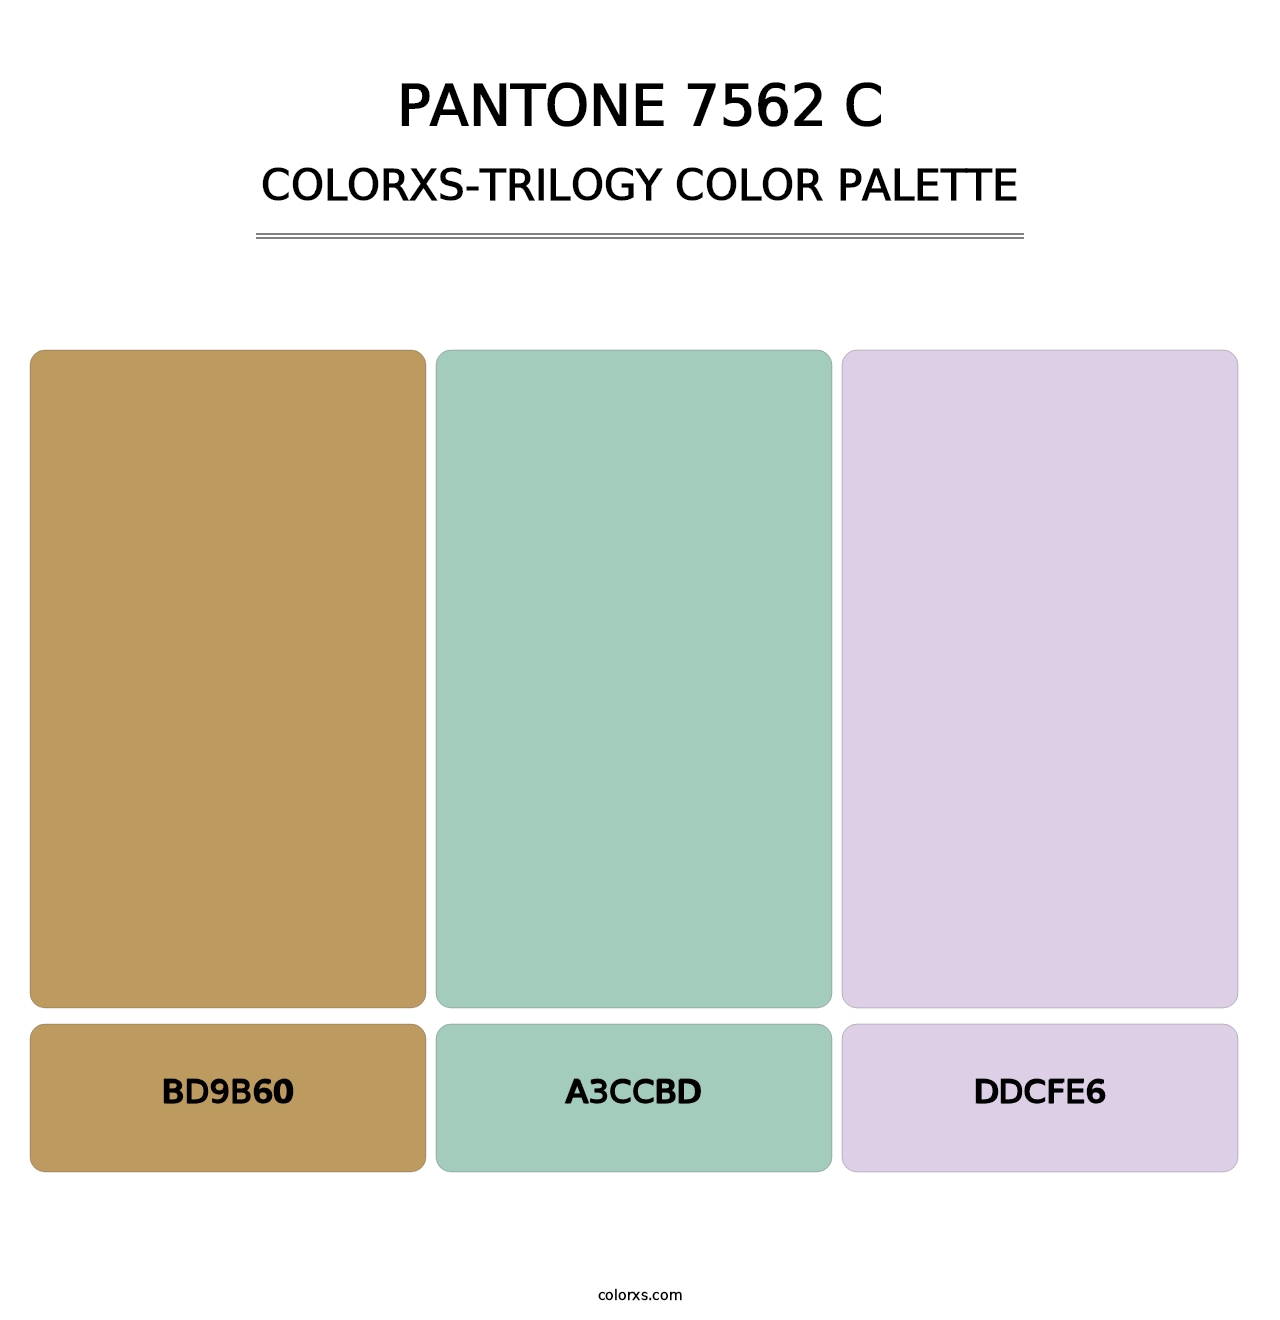 PANTONE 7562 C - Colorxs Trilogy Palette